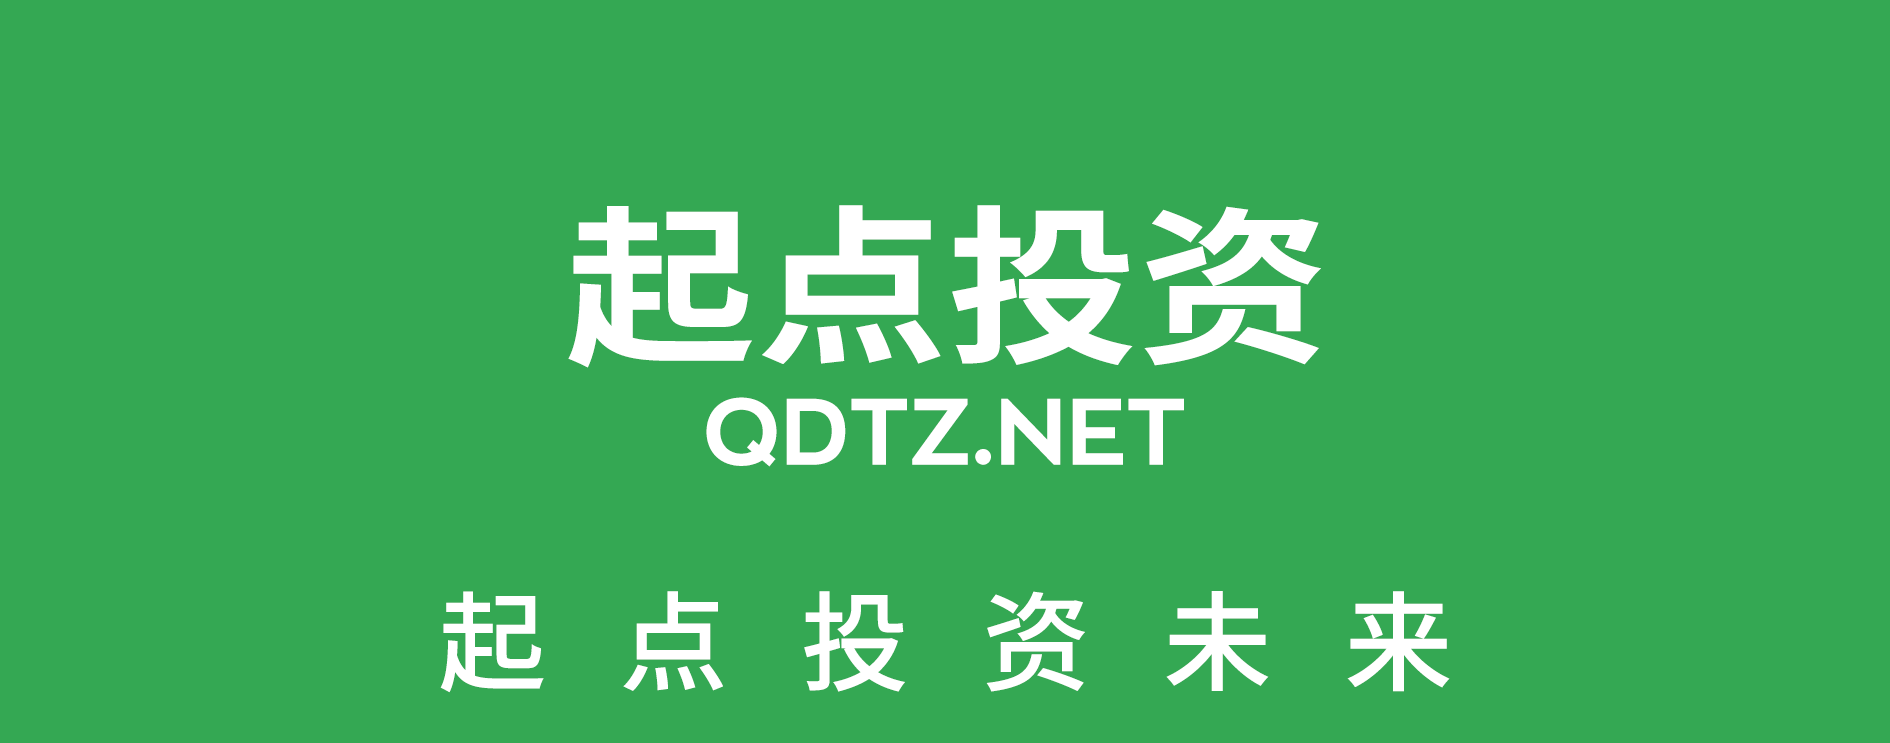 起点投资未来 QDTZ.NET